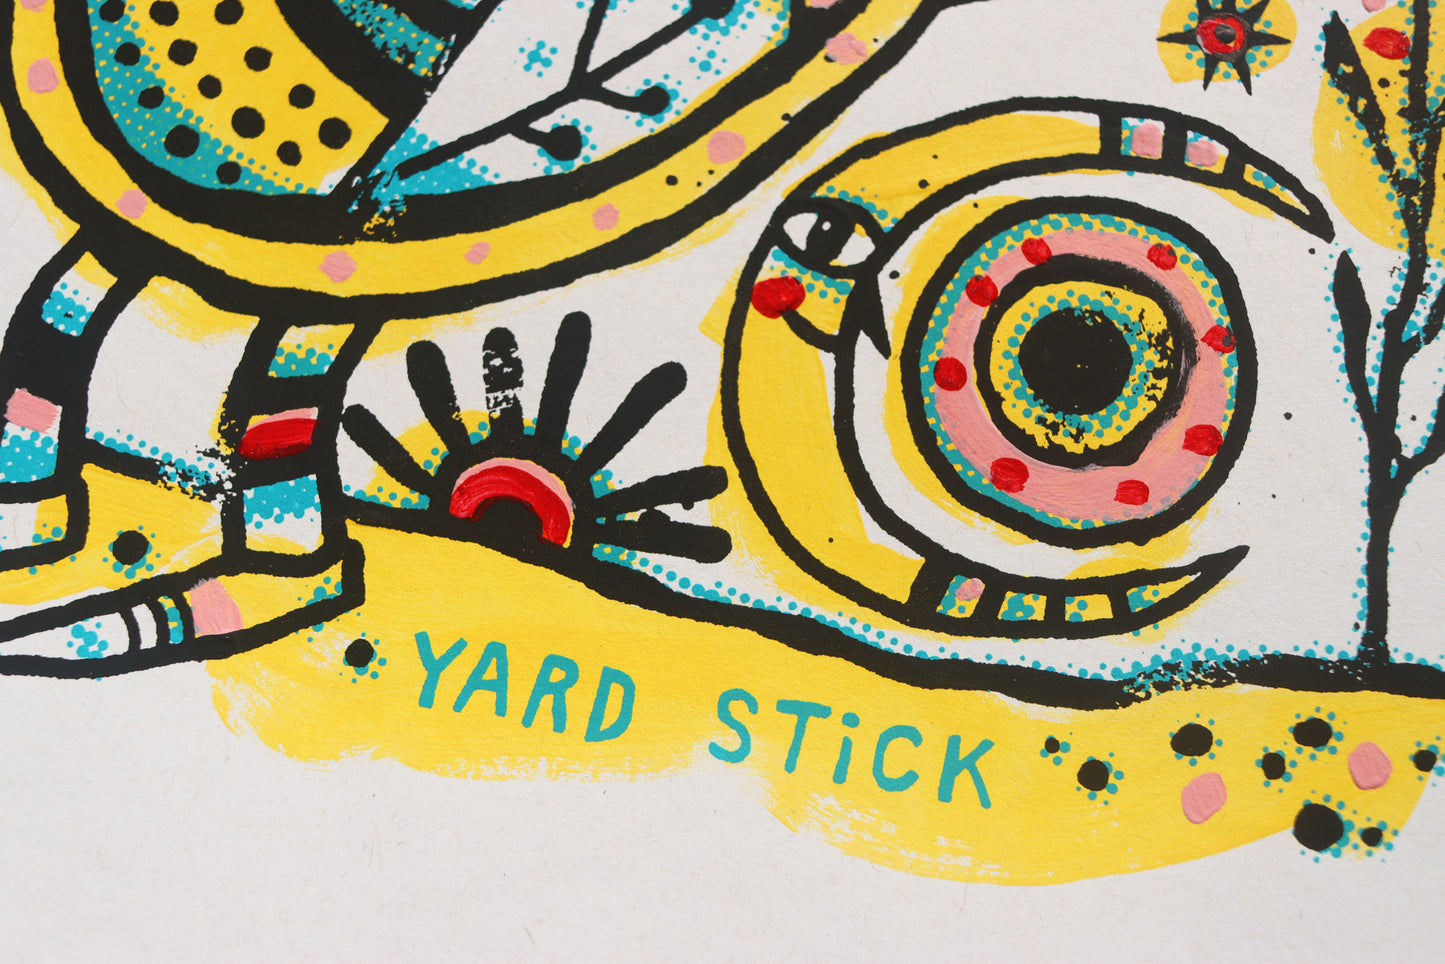 Yard Stick